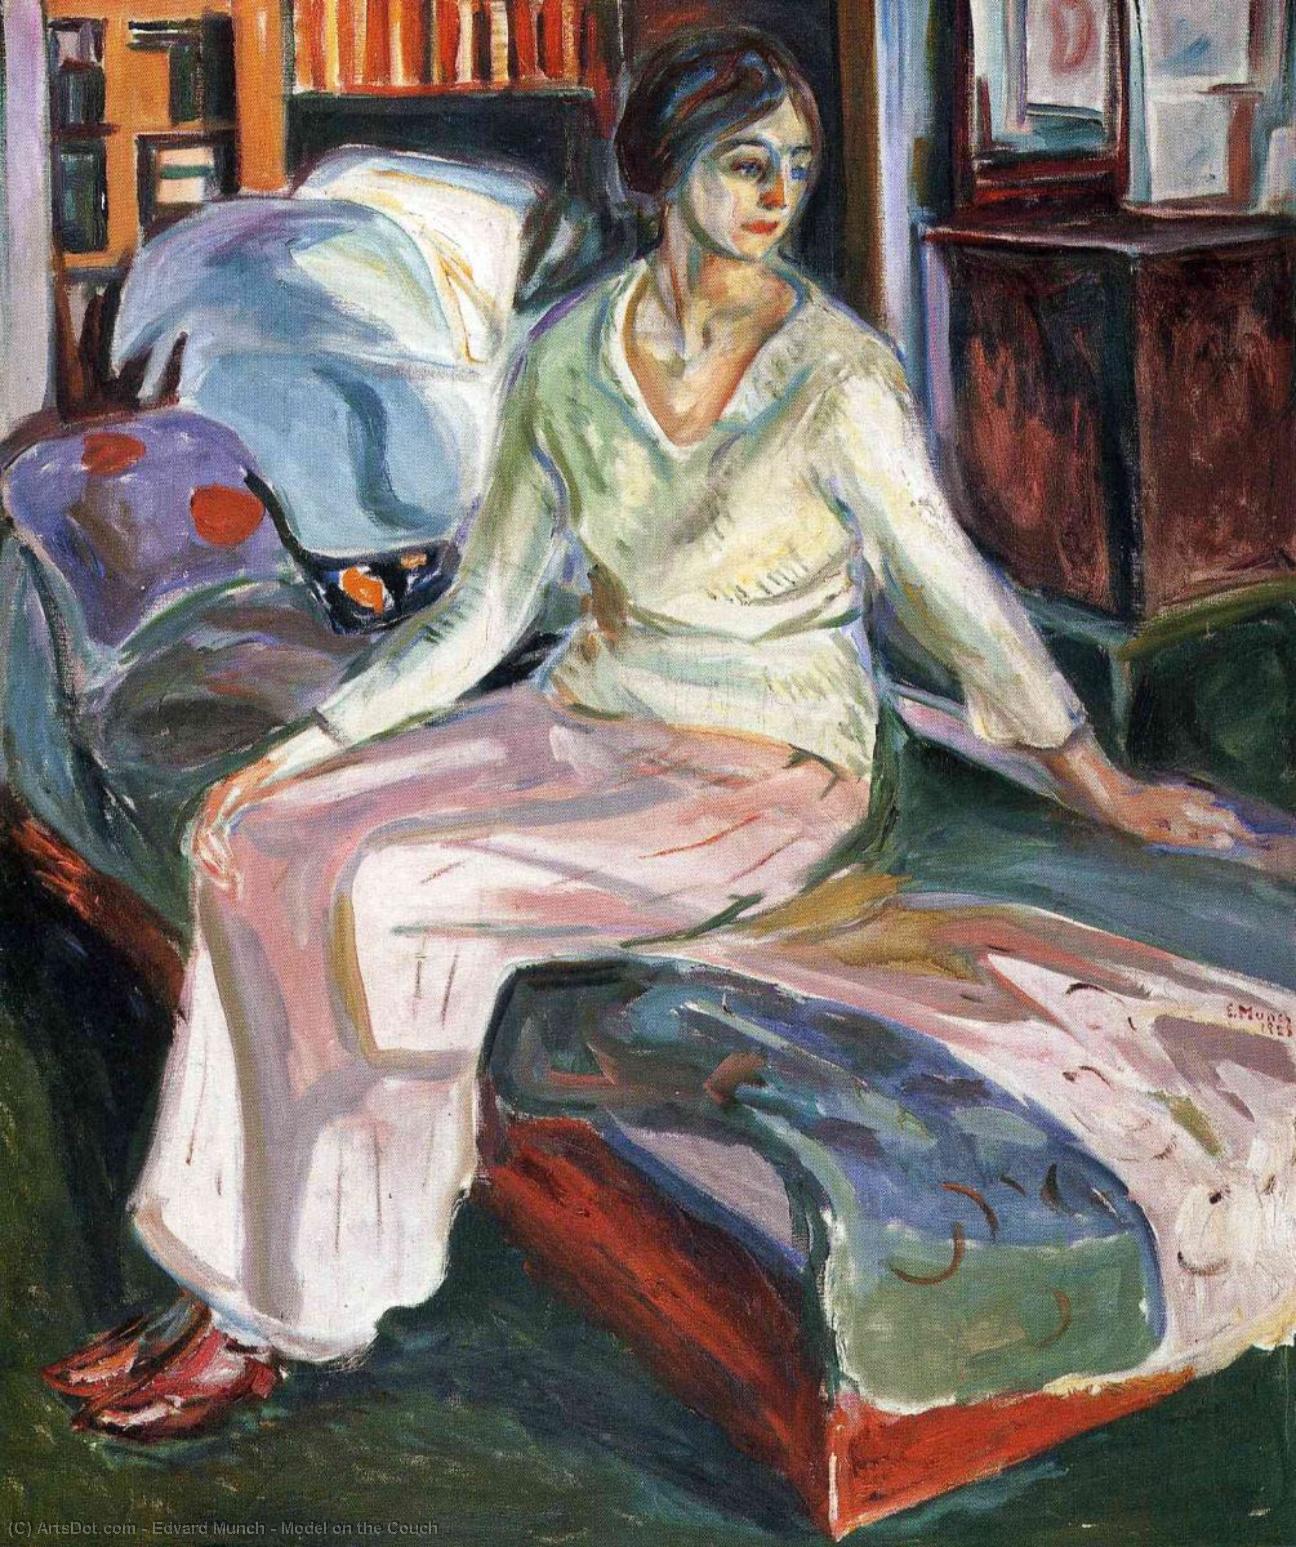 WikiOO.org - Εγκυκλοπαίδεια Καλών Τεχνών - Ζωγραφική, έργα τέχνης Edvard Munch - Model on the Couch